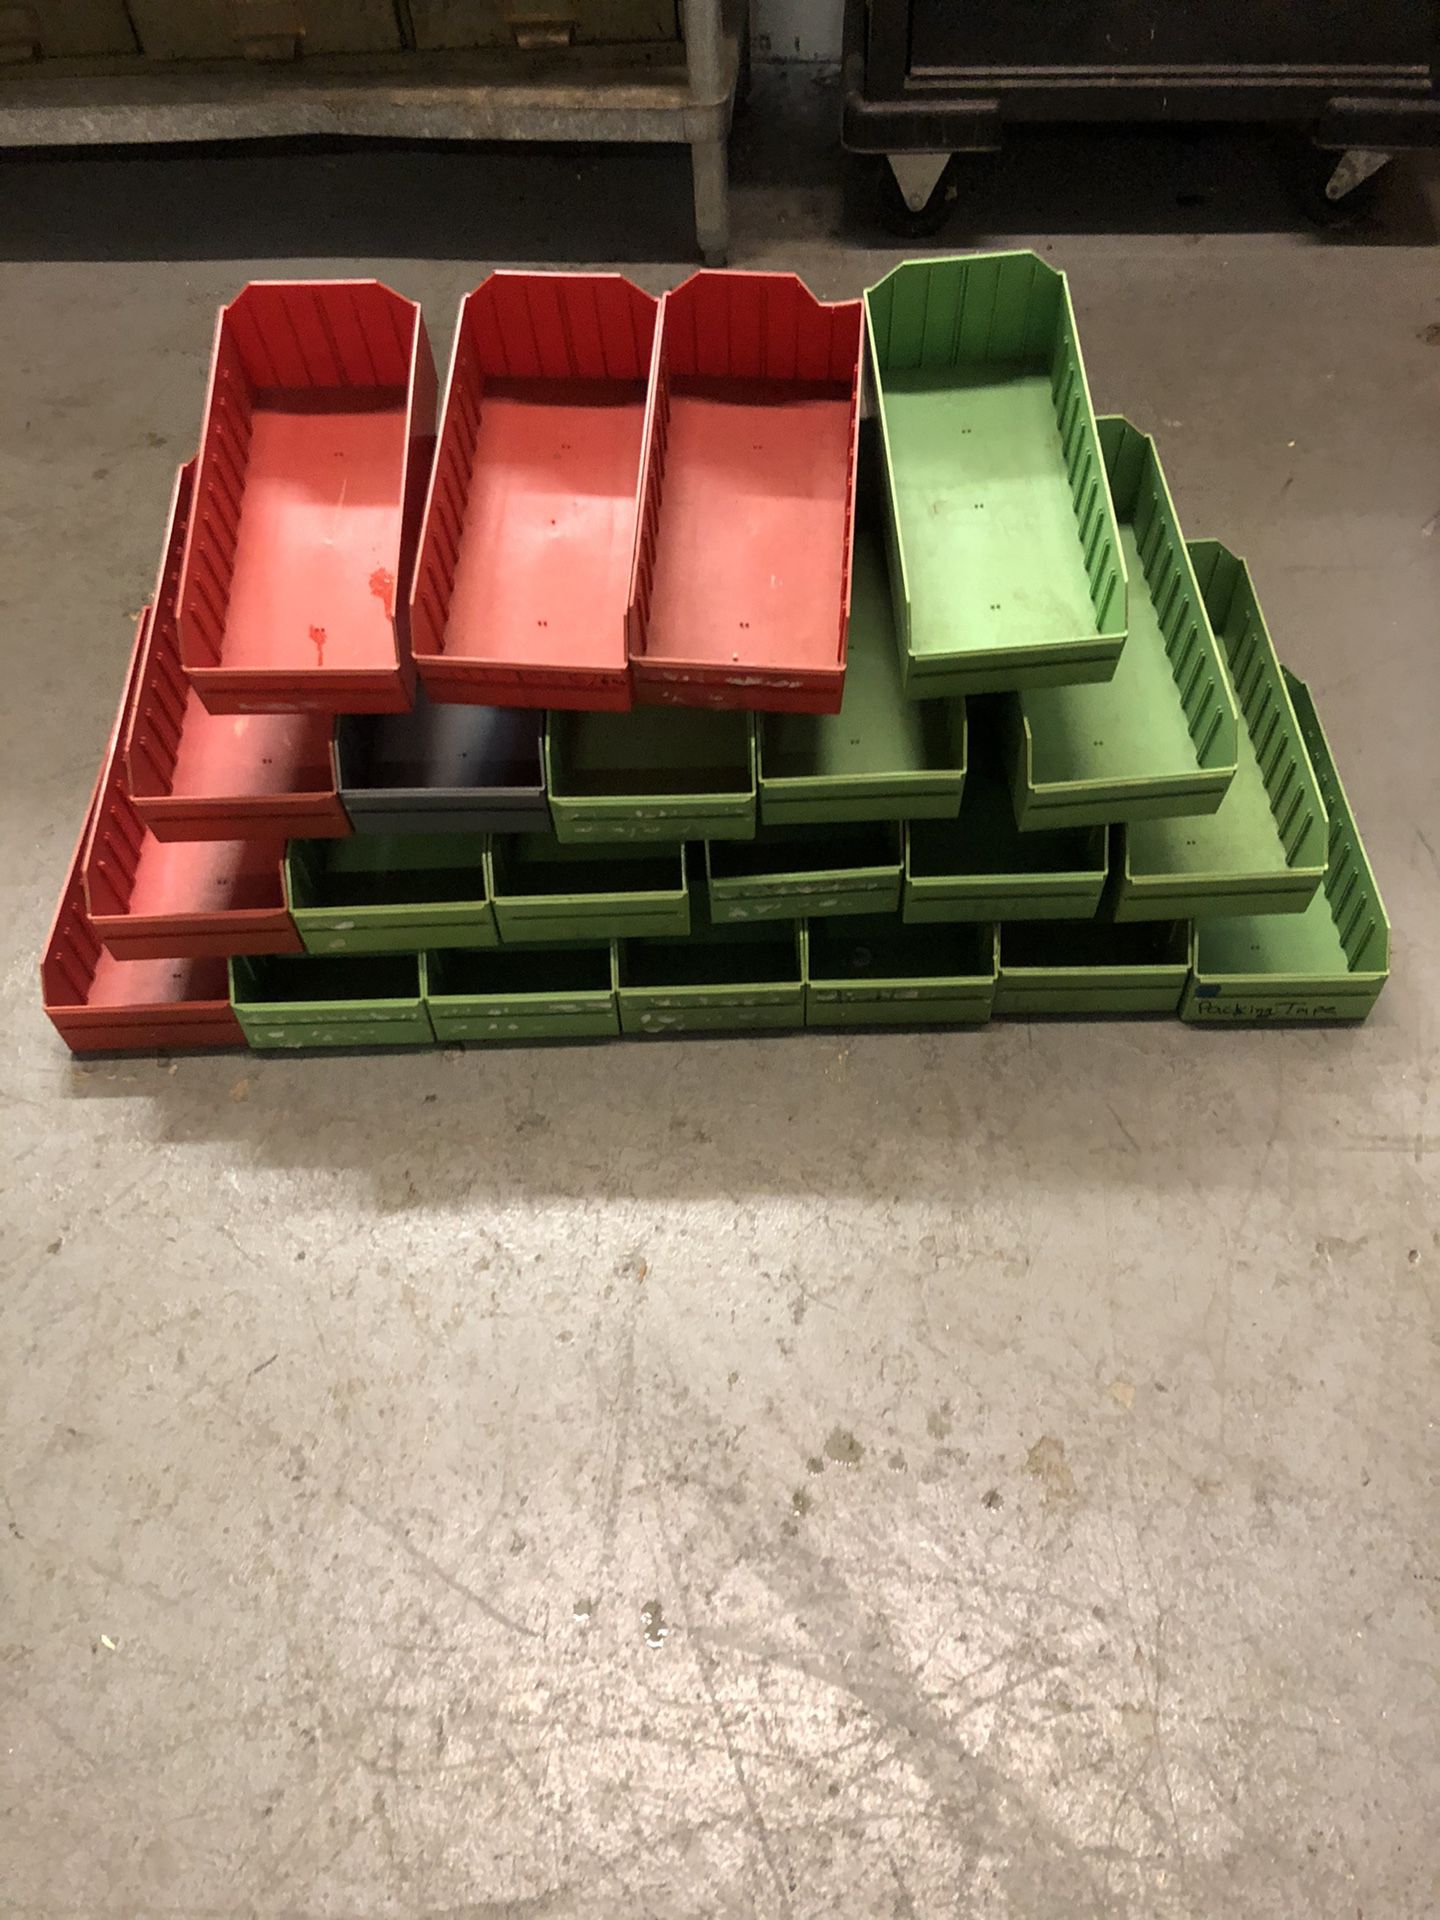 Organize plastic cube